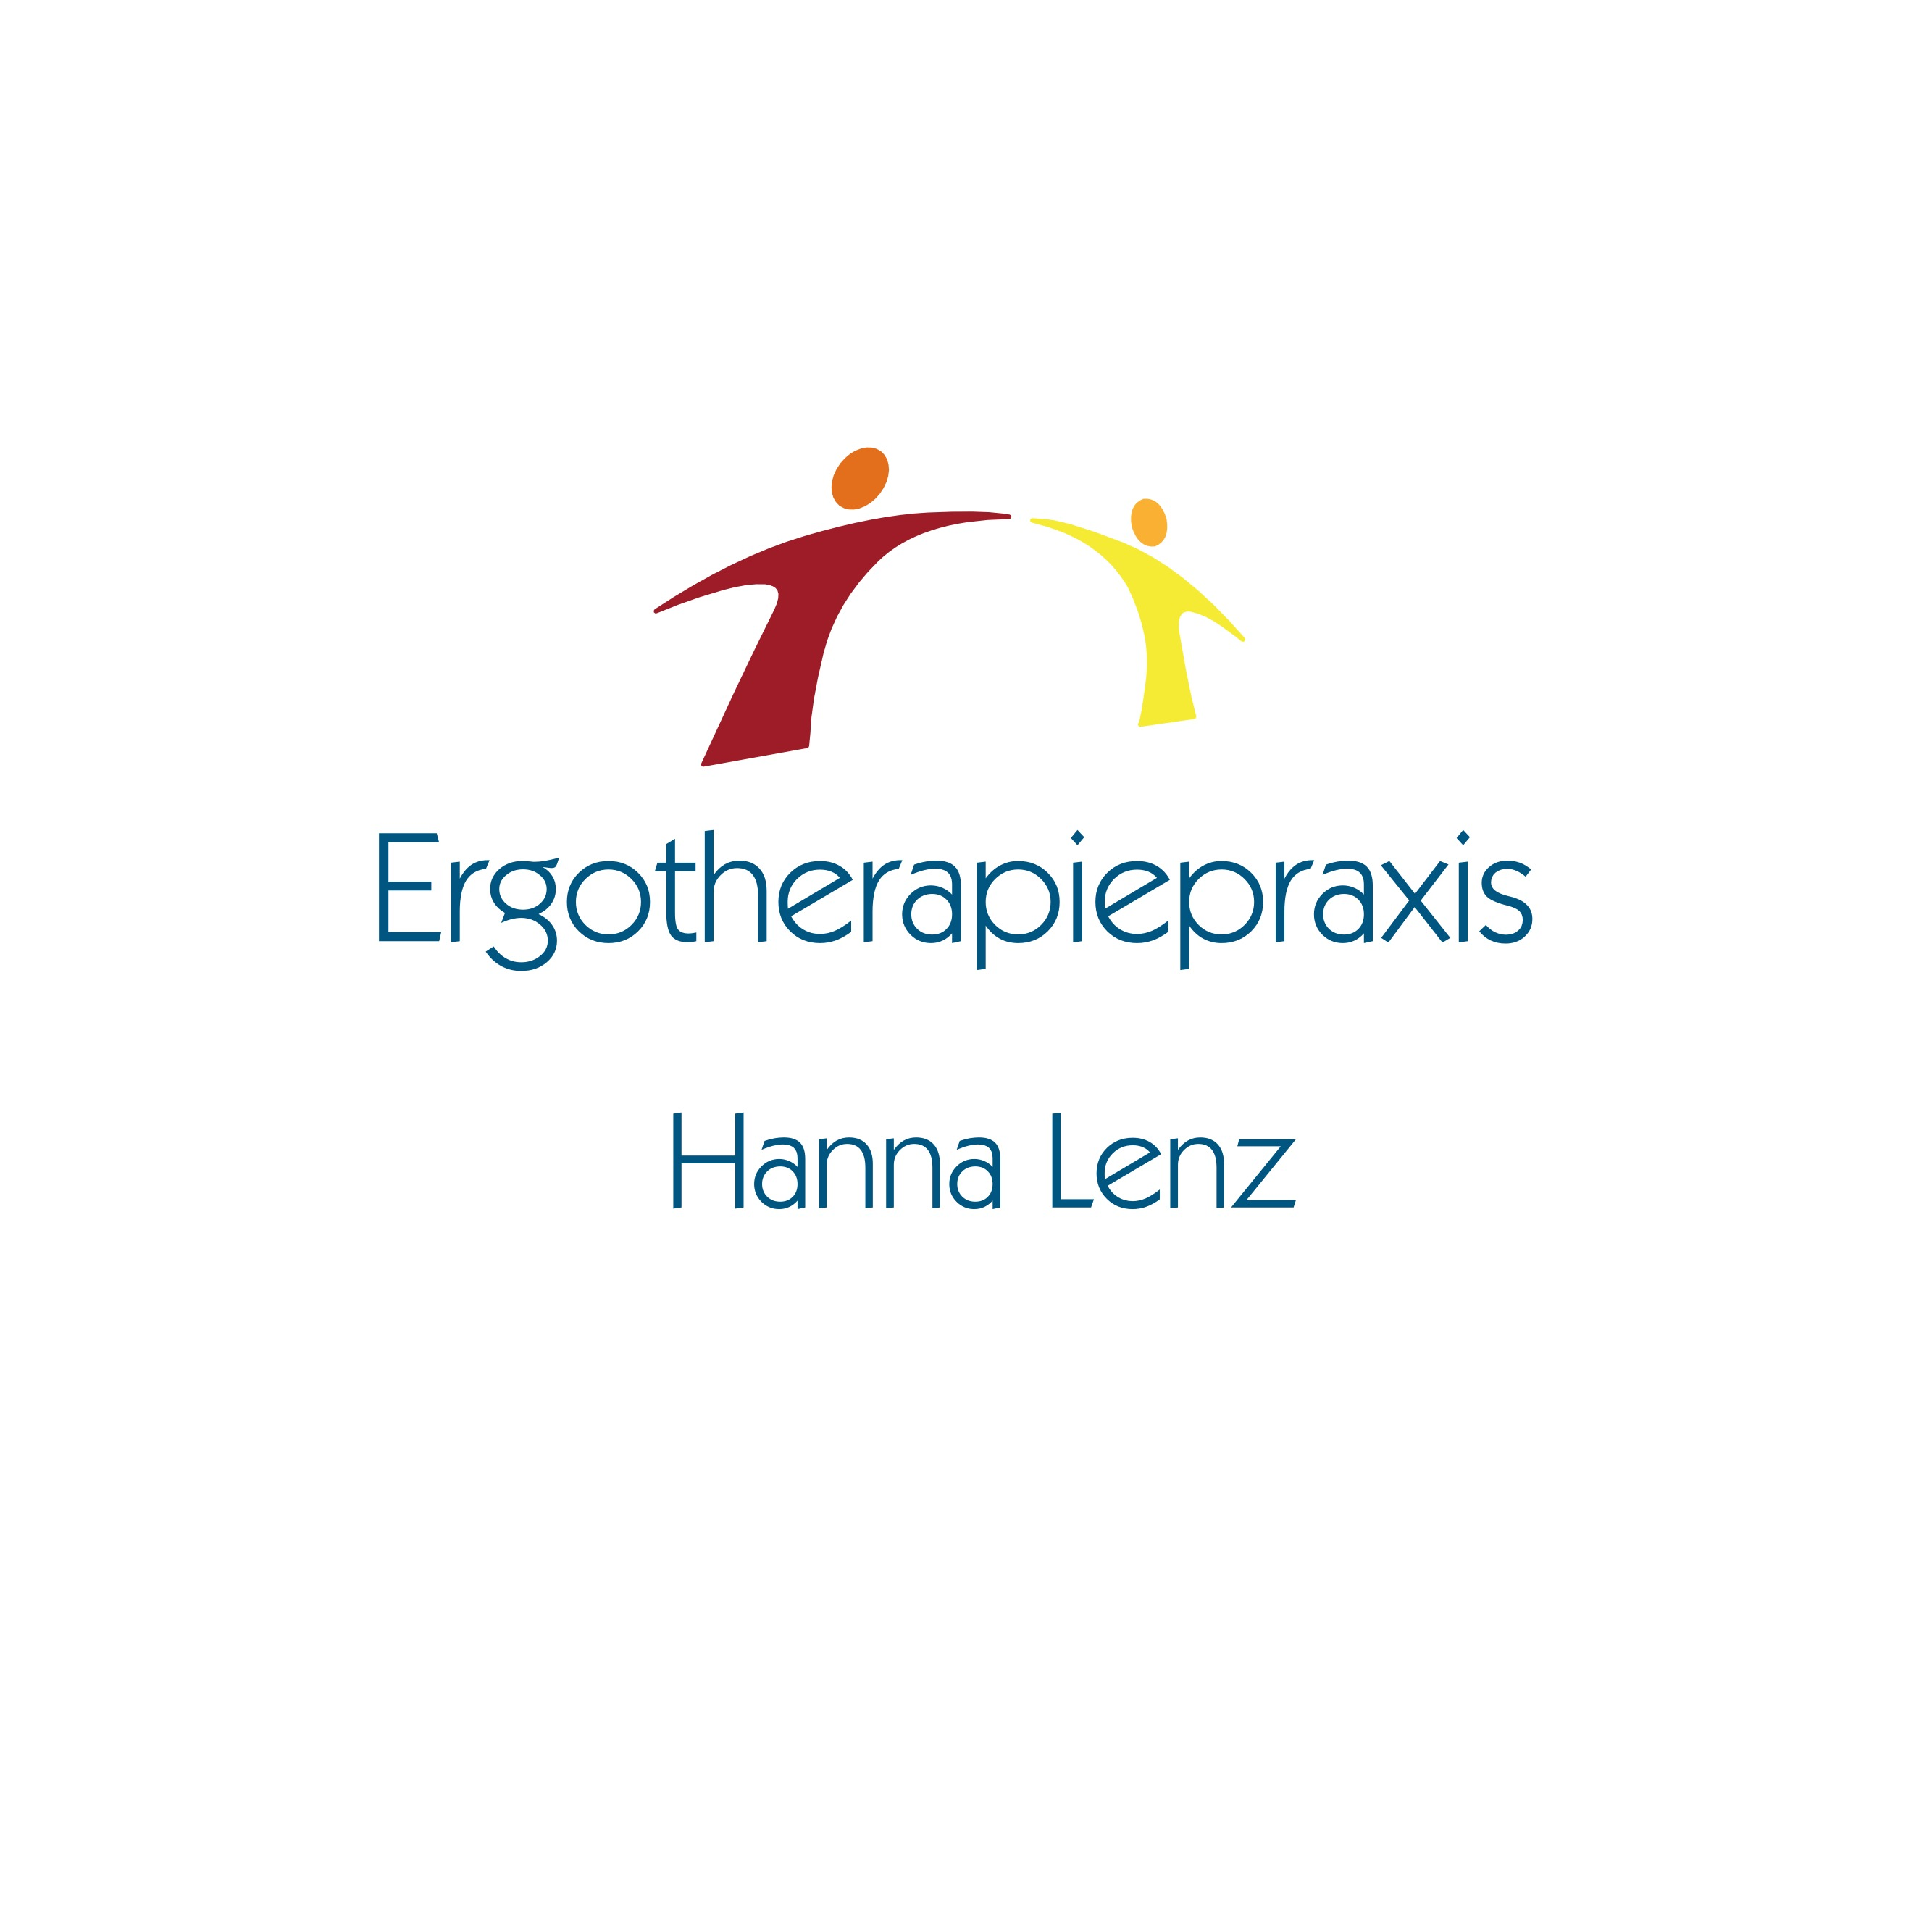 Ergotherapiepraxis Hanna Lenz in Mannheim - Logo